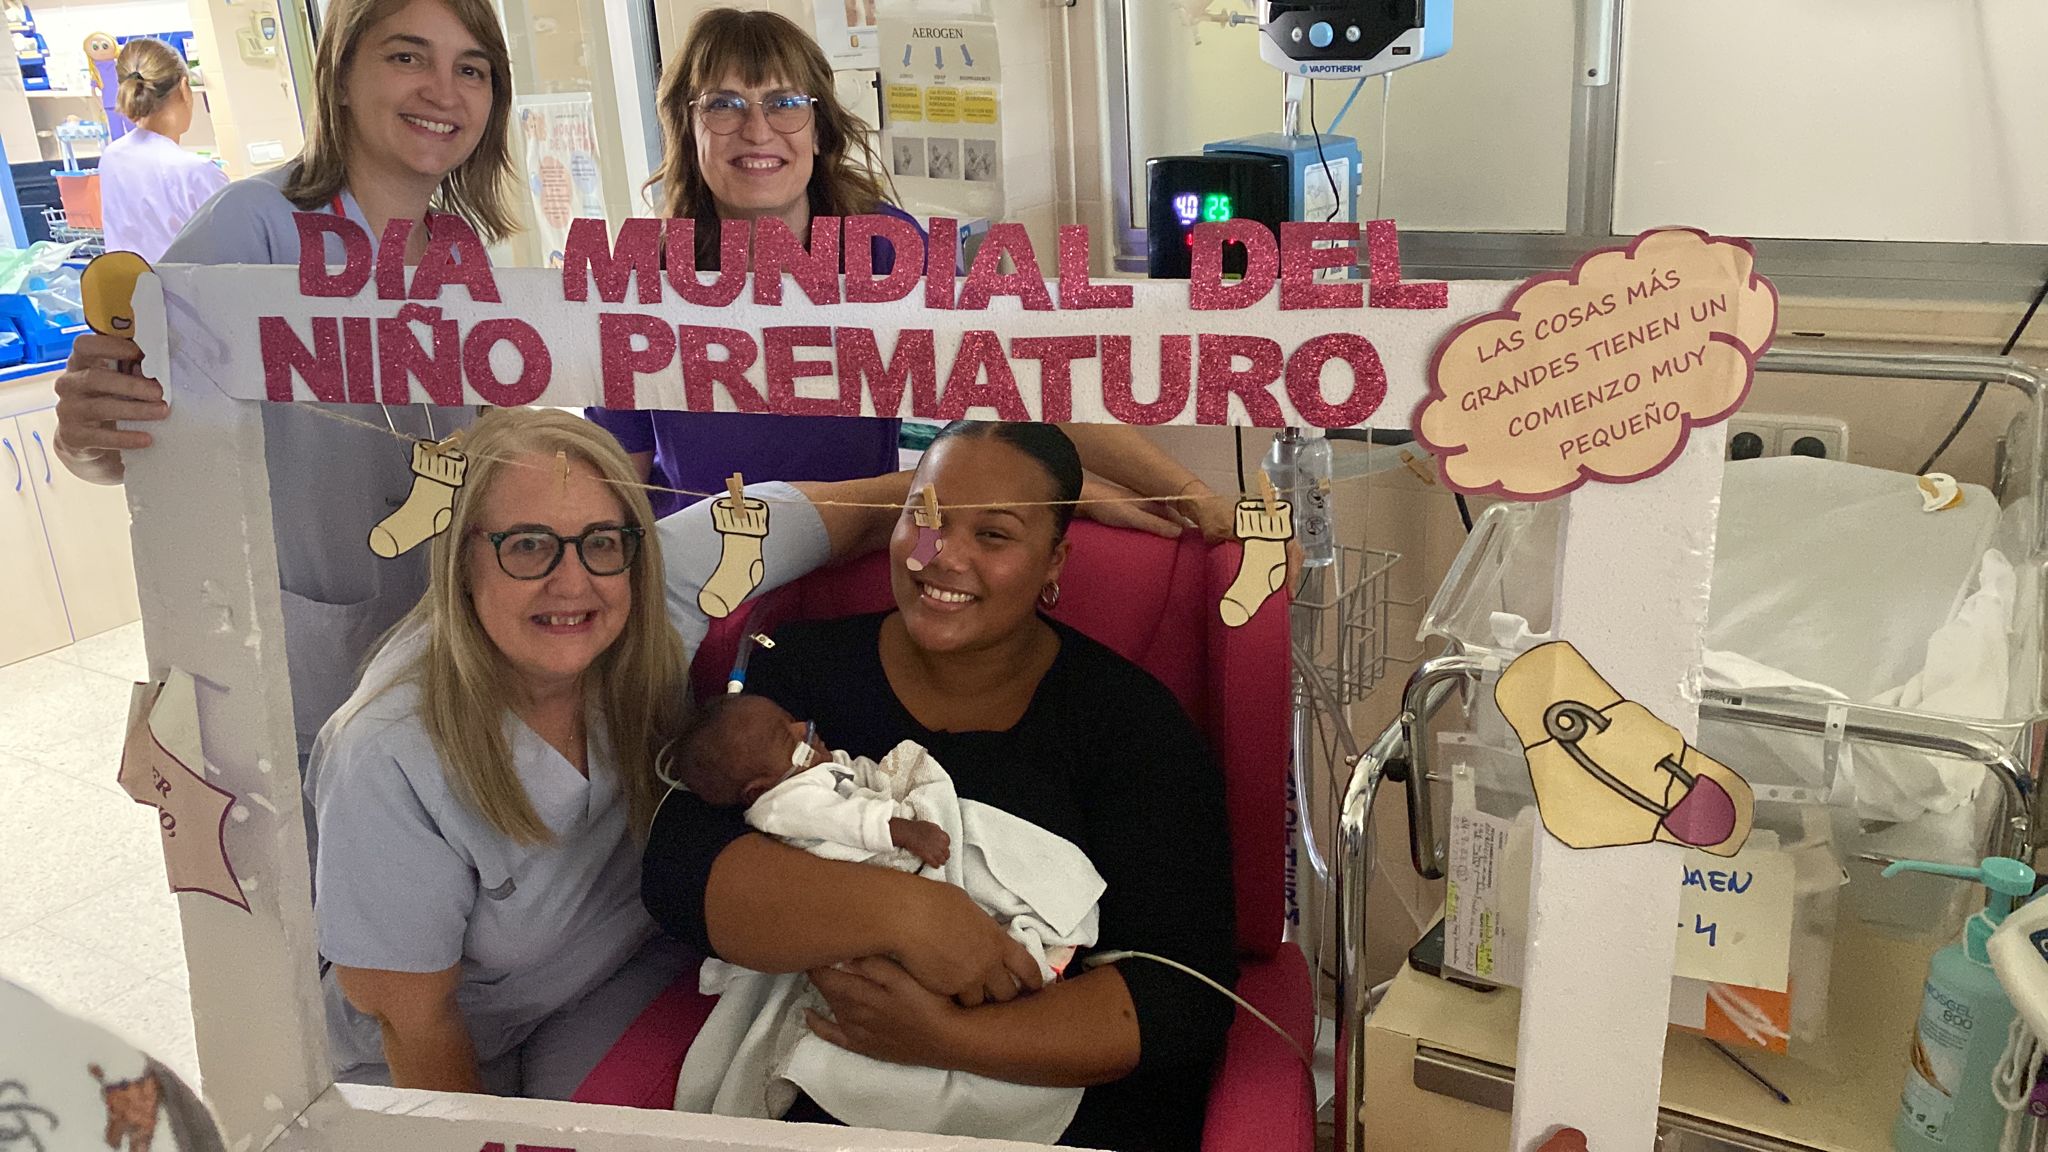 pares i professionals celebren el dia mundial del prematur